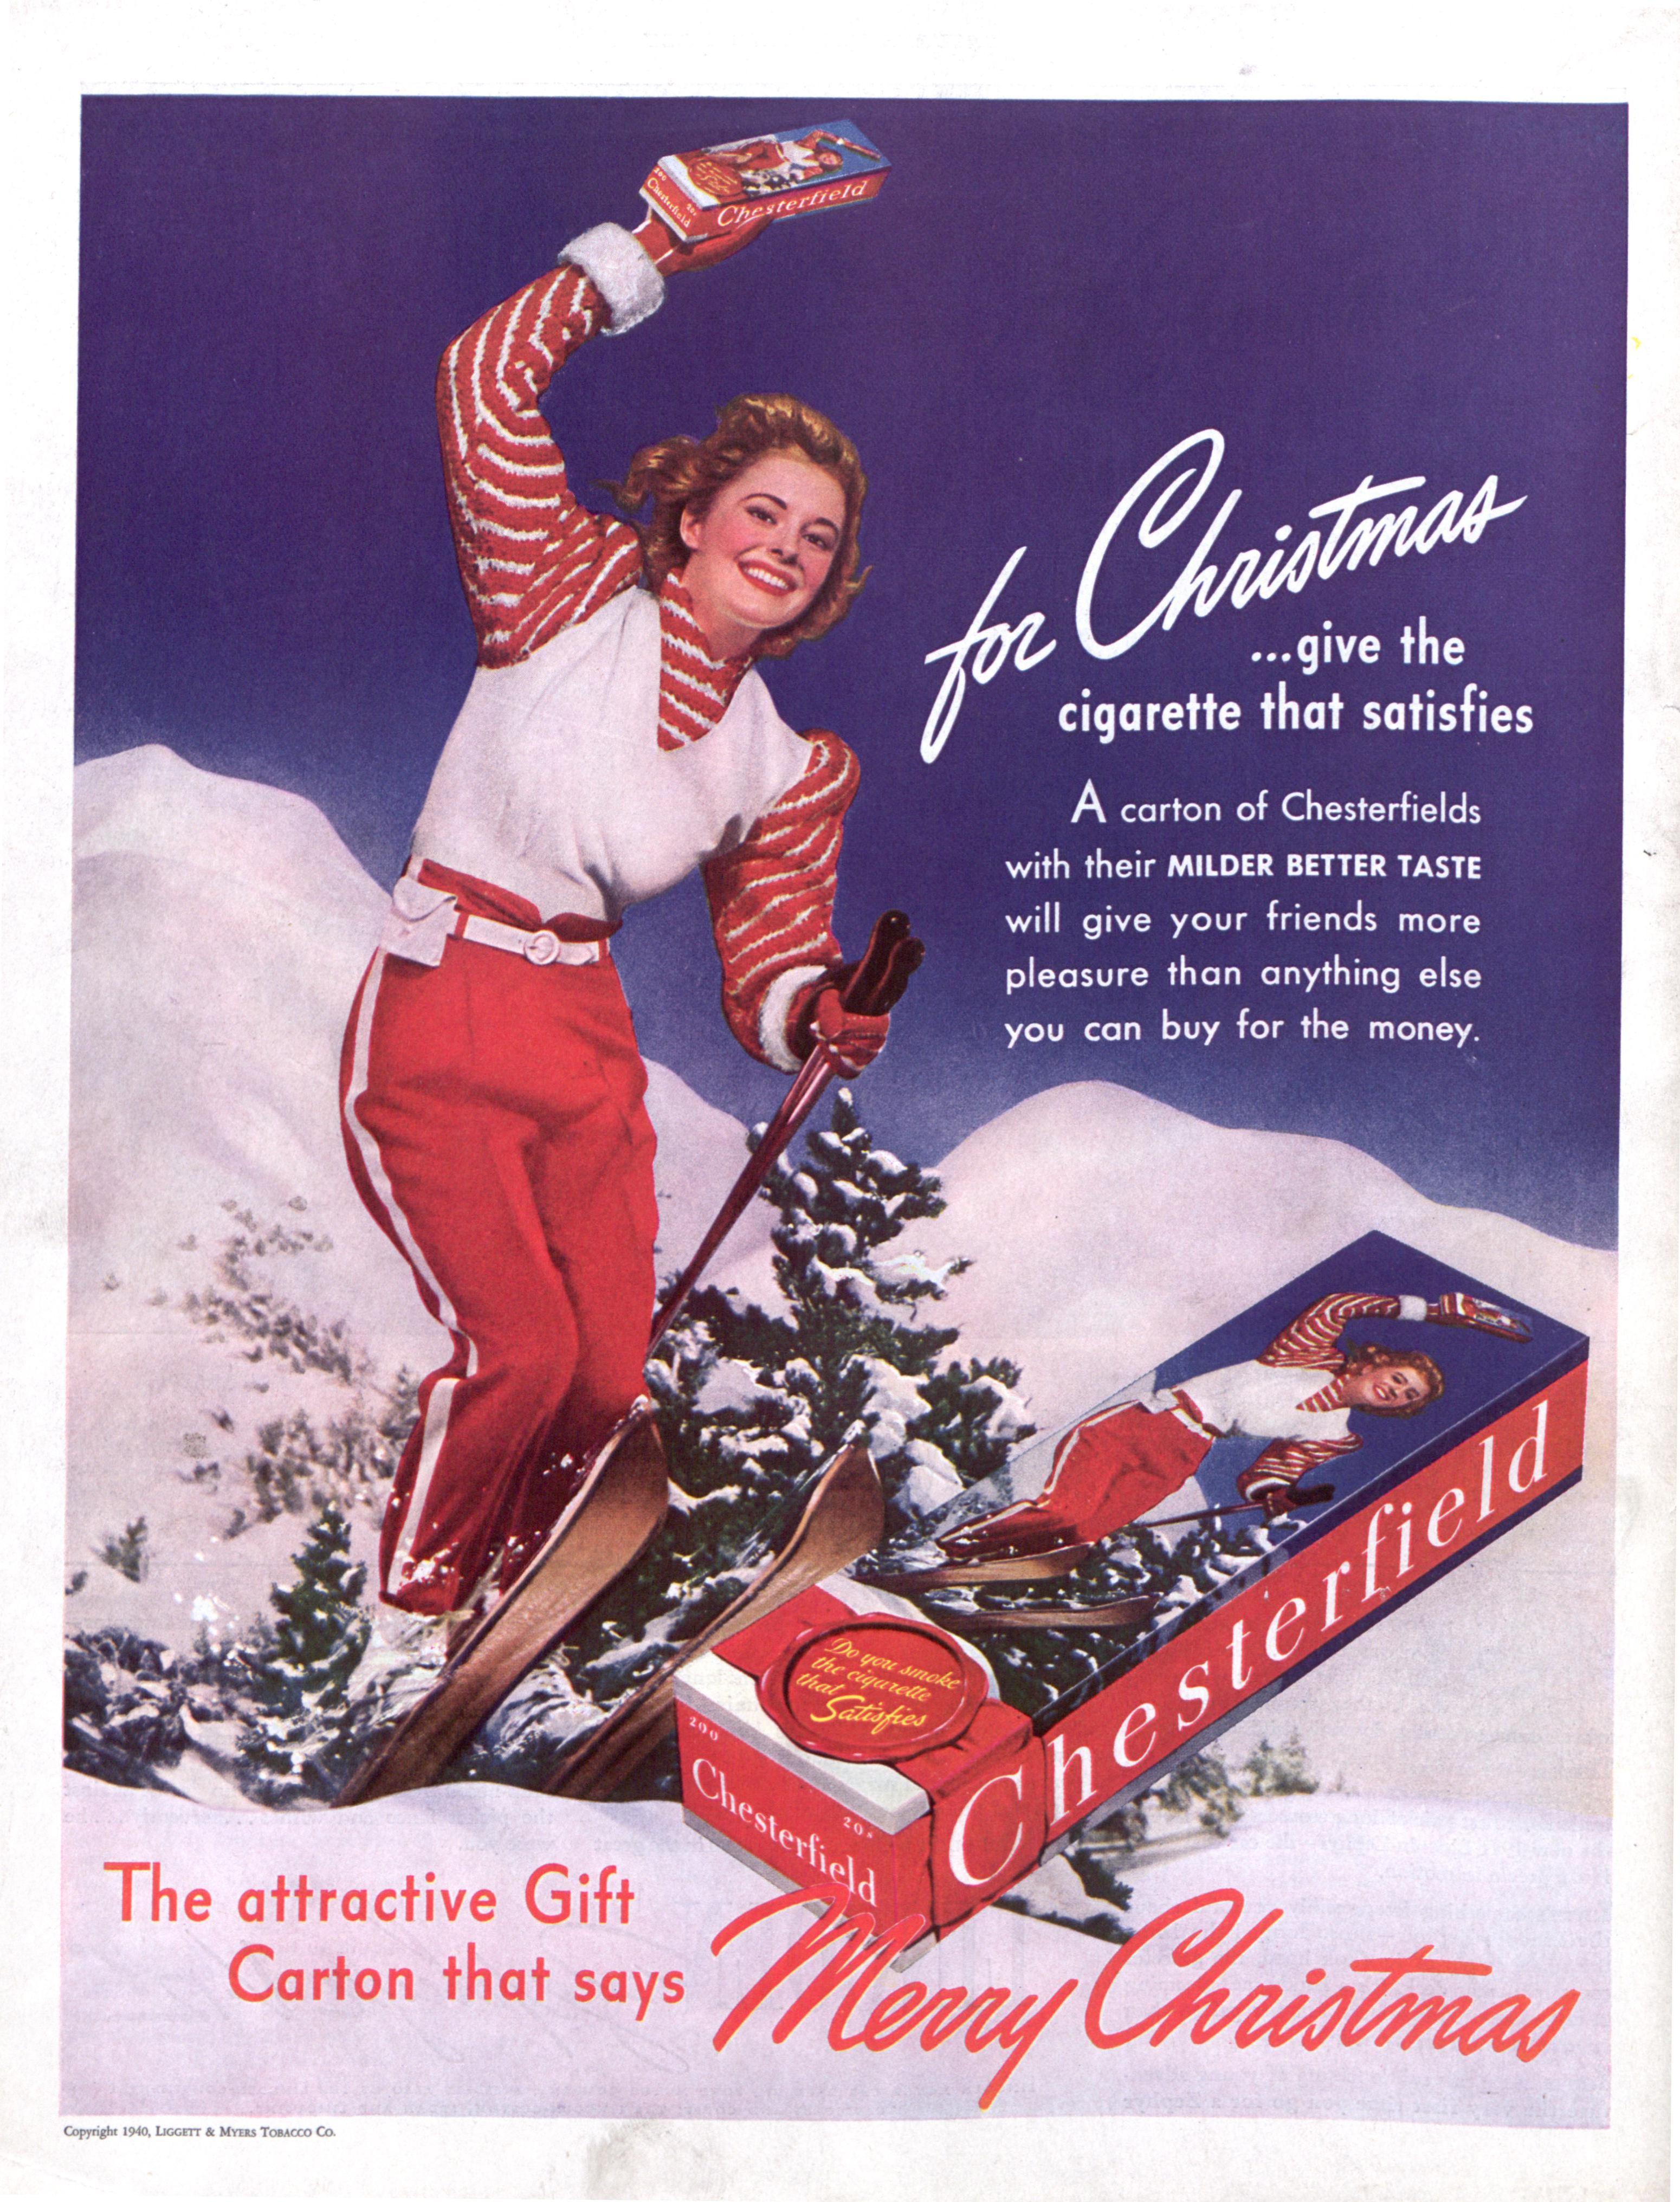 1940s cigarette ads